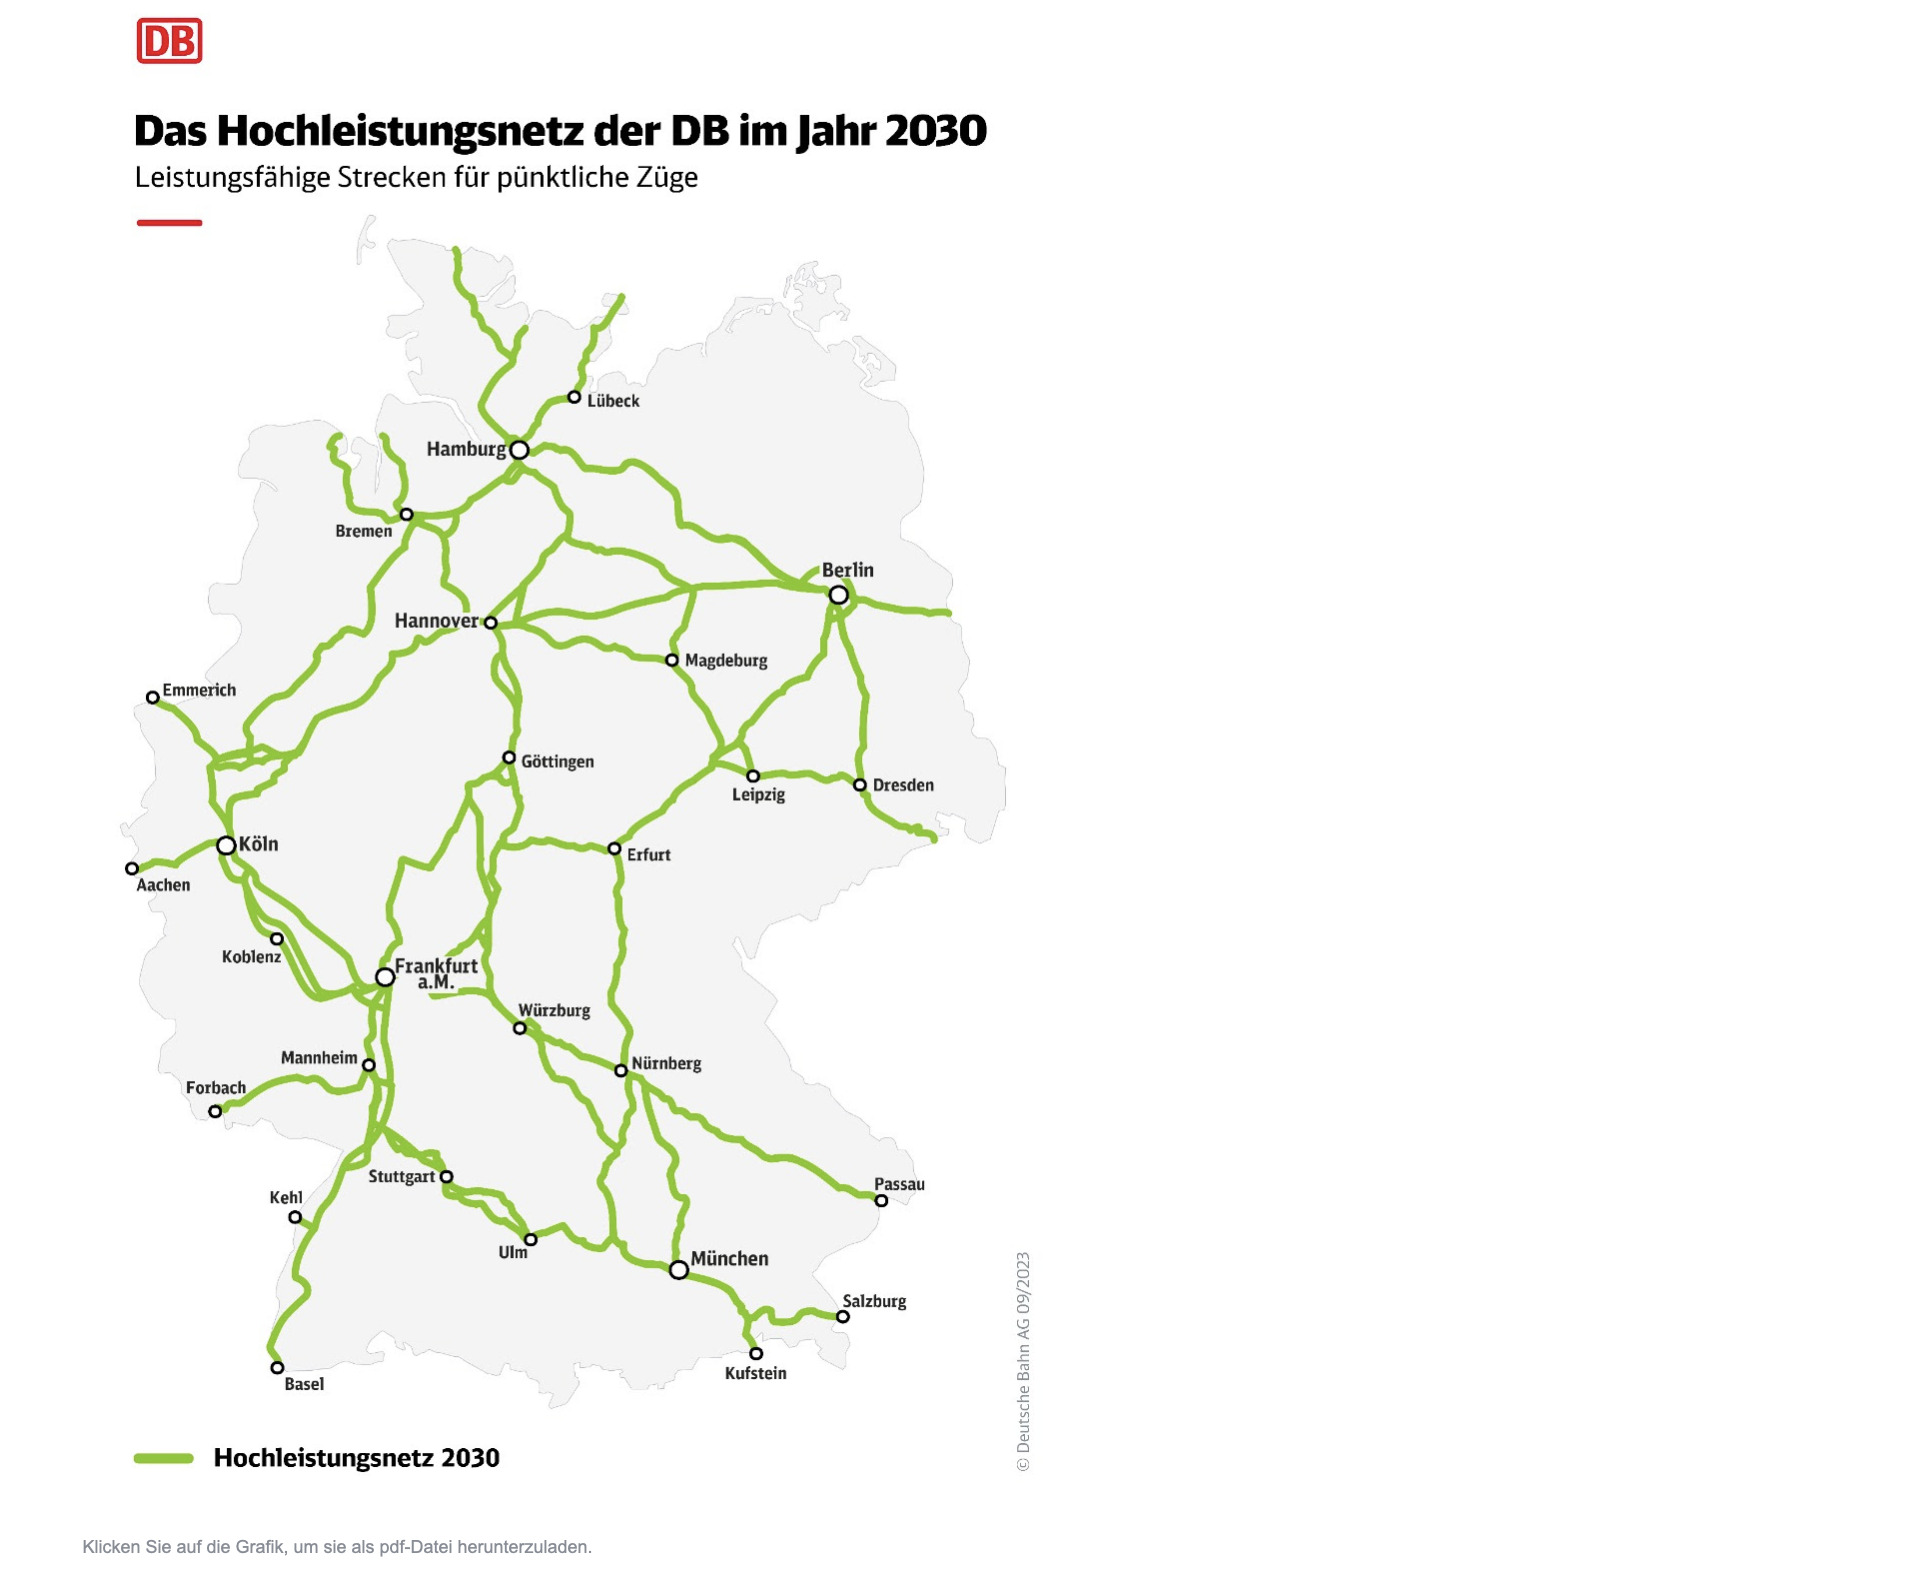 Deutsche Bahn's high-performance network in 2030 (Photo: Deutsche Bahn)